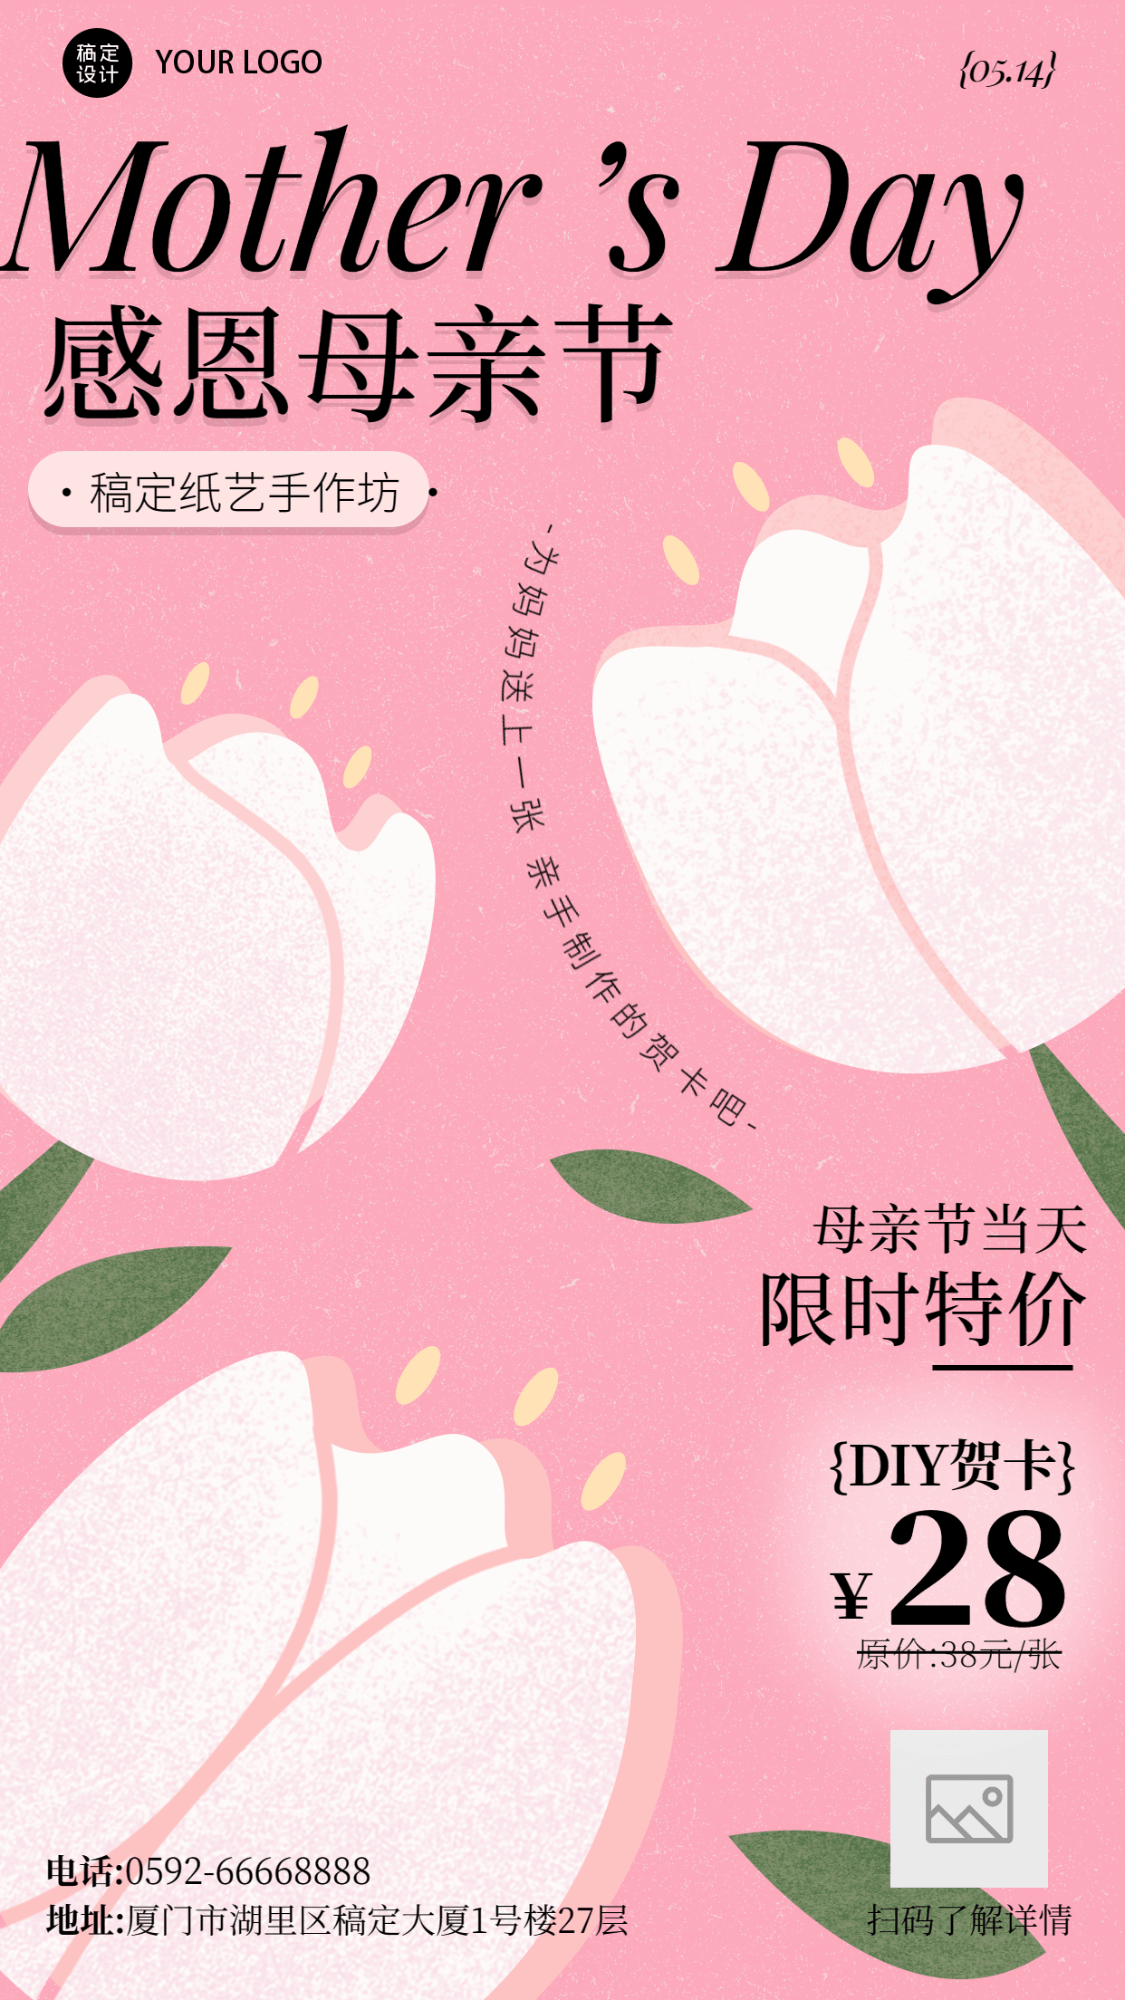 母亲节花艺贺卡手工坊节日营销宣传海报